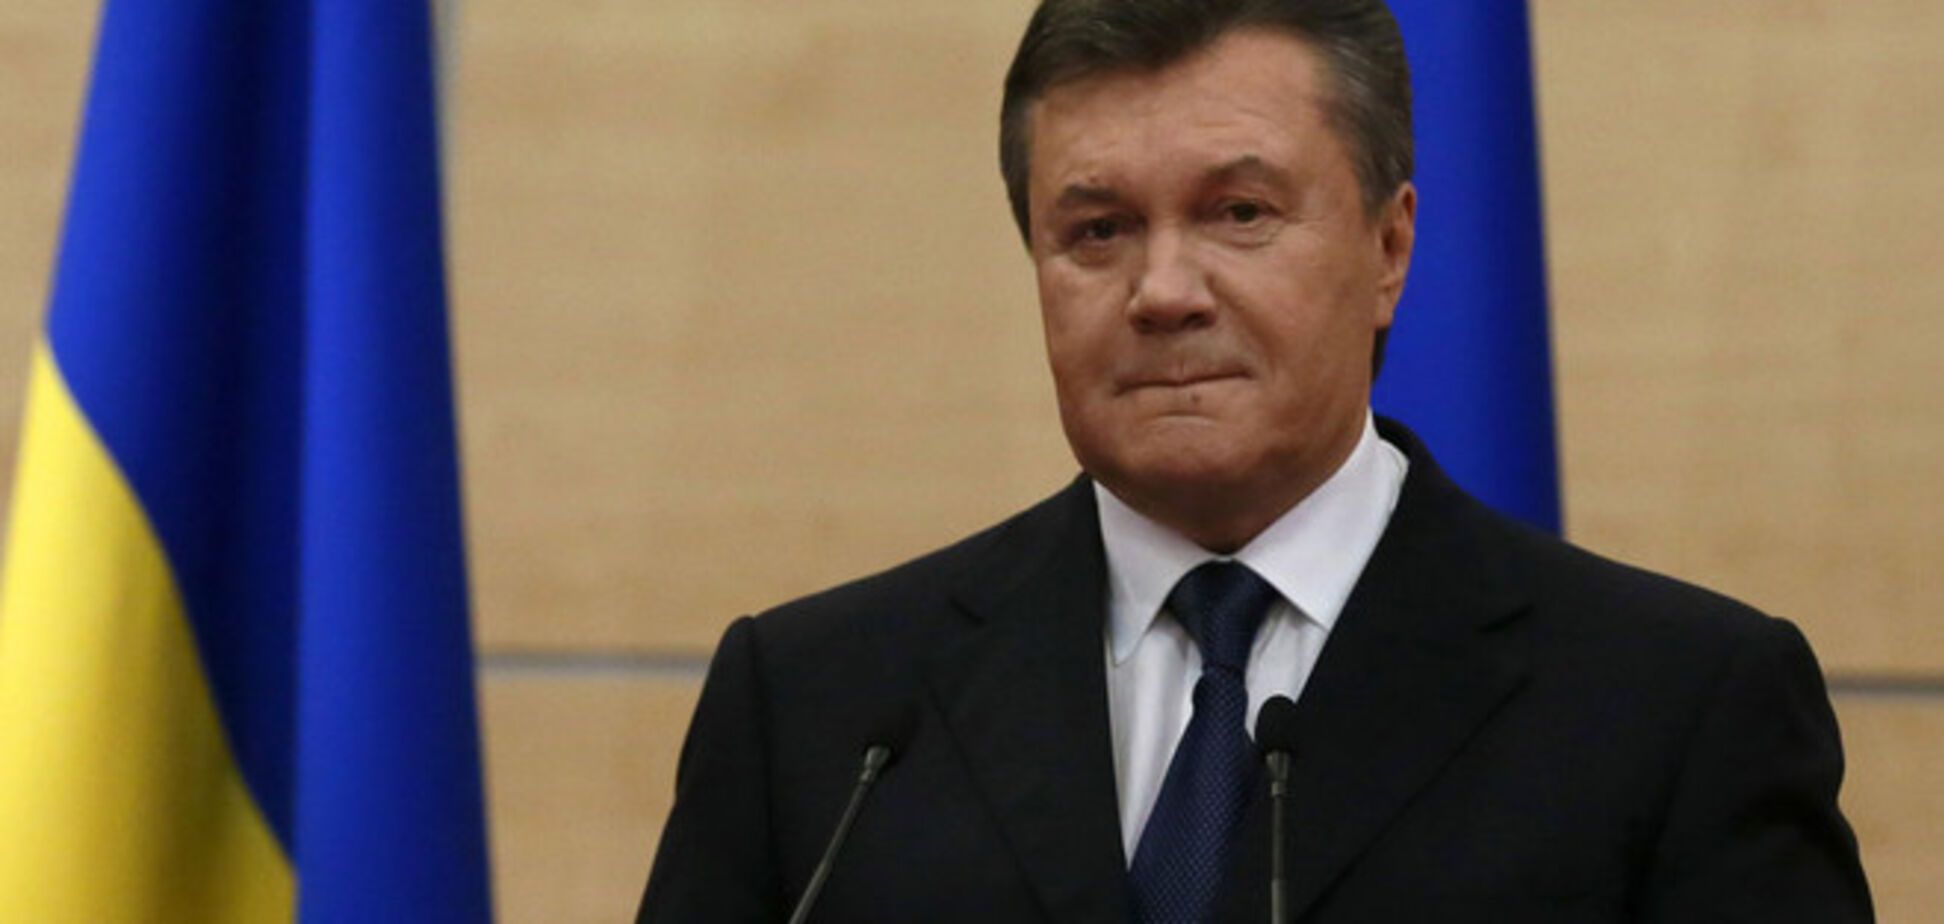 Експерт: Янукович на прес-конференції з'ясує відносини з 'Опозиційним блоком'